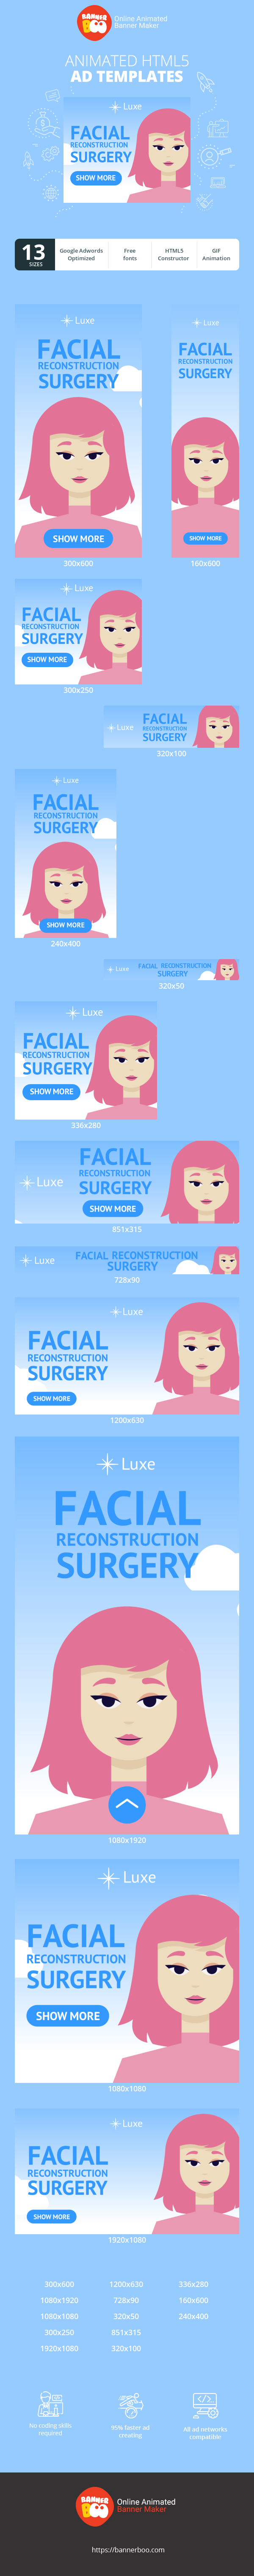 Szablon reklamy banerowej — Facial Reconstruction Surgery — Plastic Surgeon